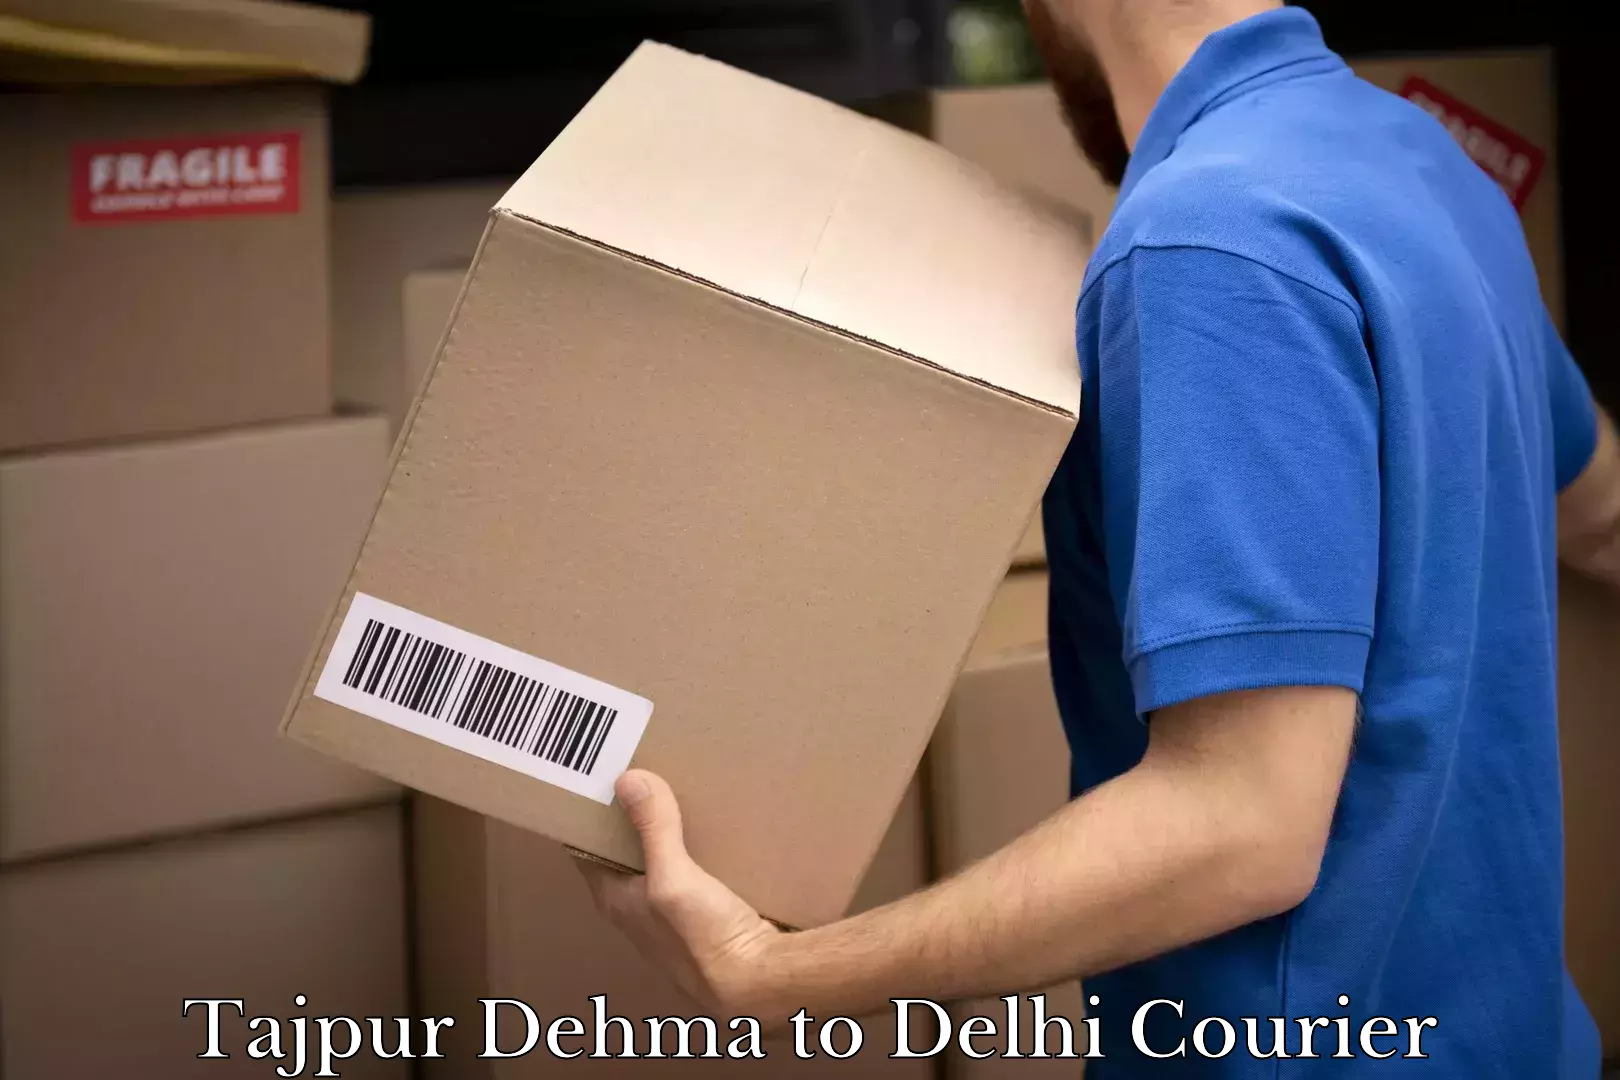 Easy access courier services Tajpur Dehma to Delhi